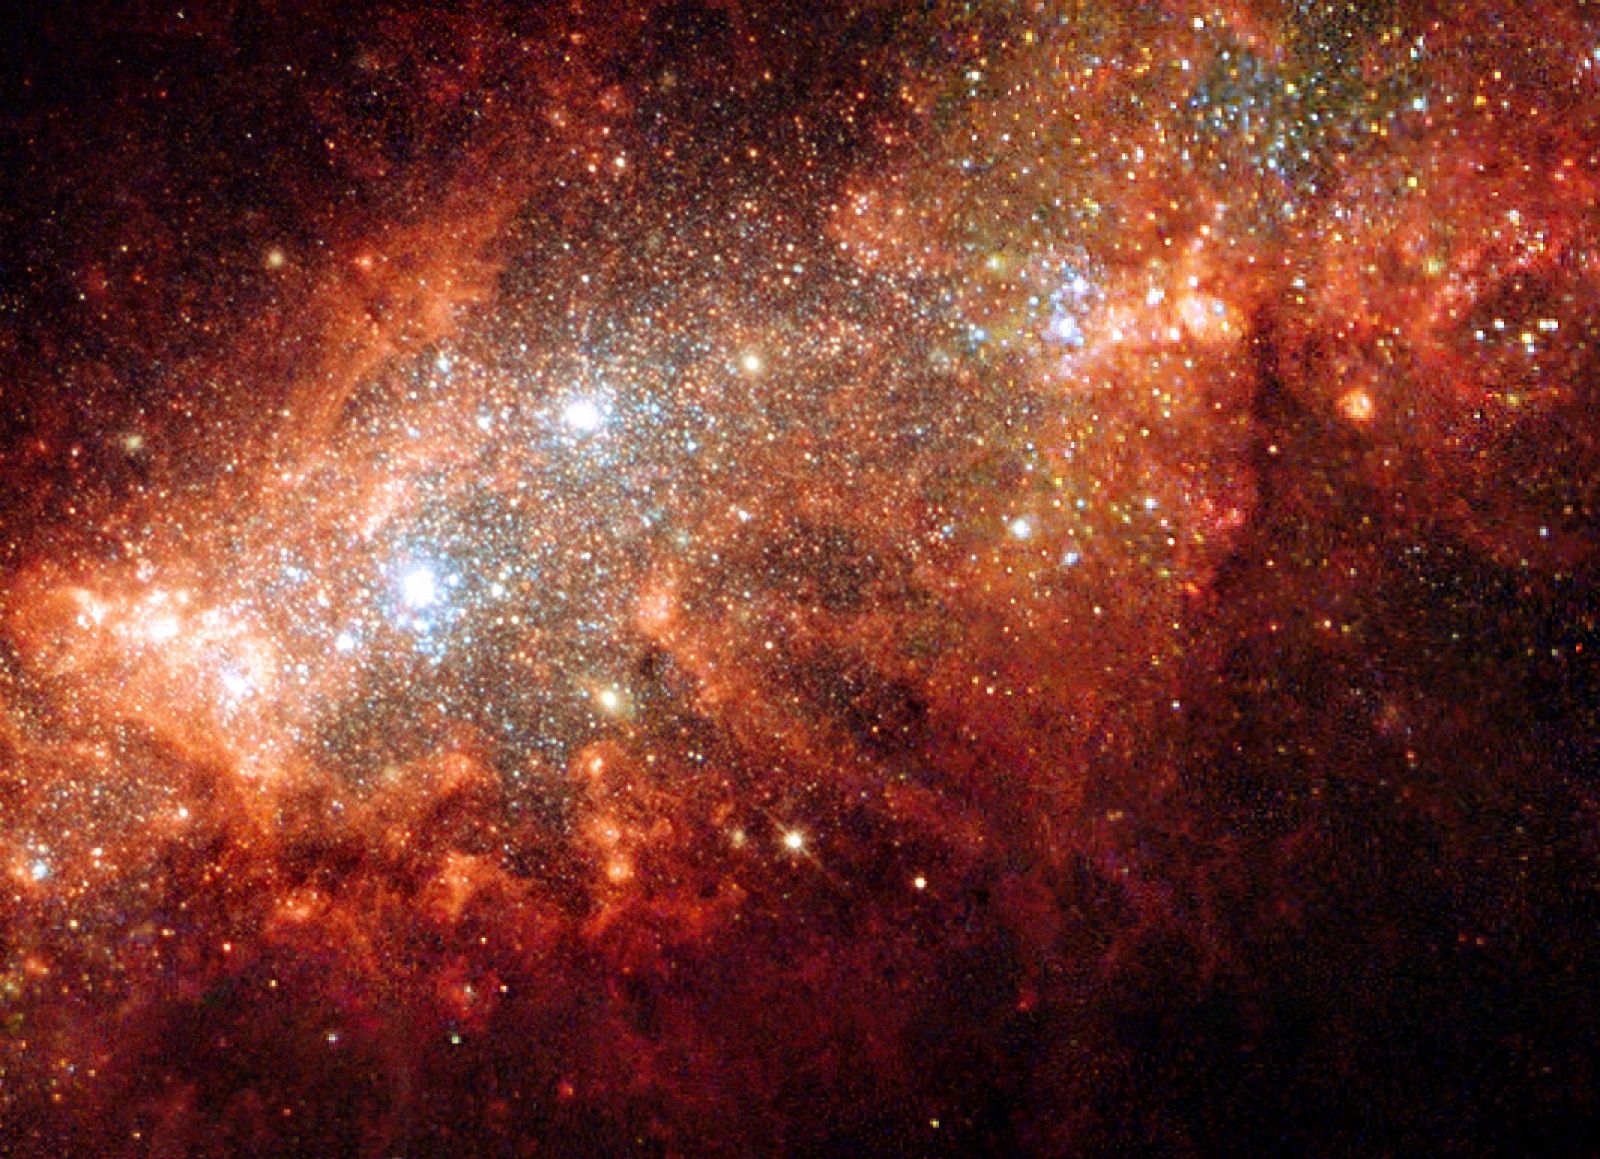 Centro de NGC 1569 observado por el Telescopio Espacial Hubble.